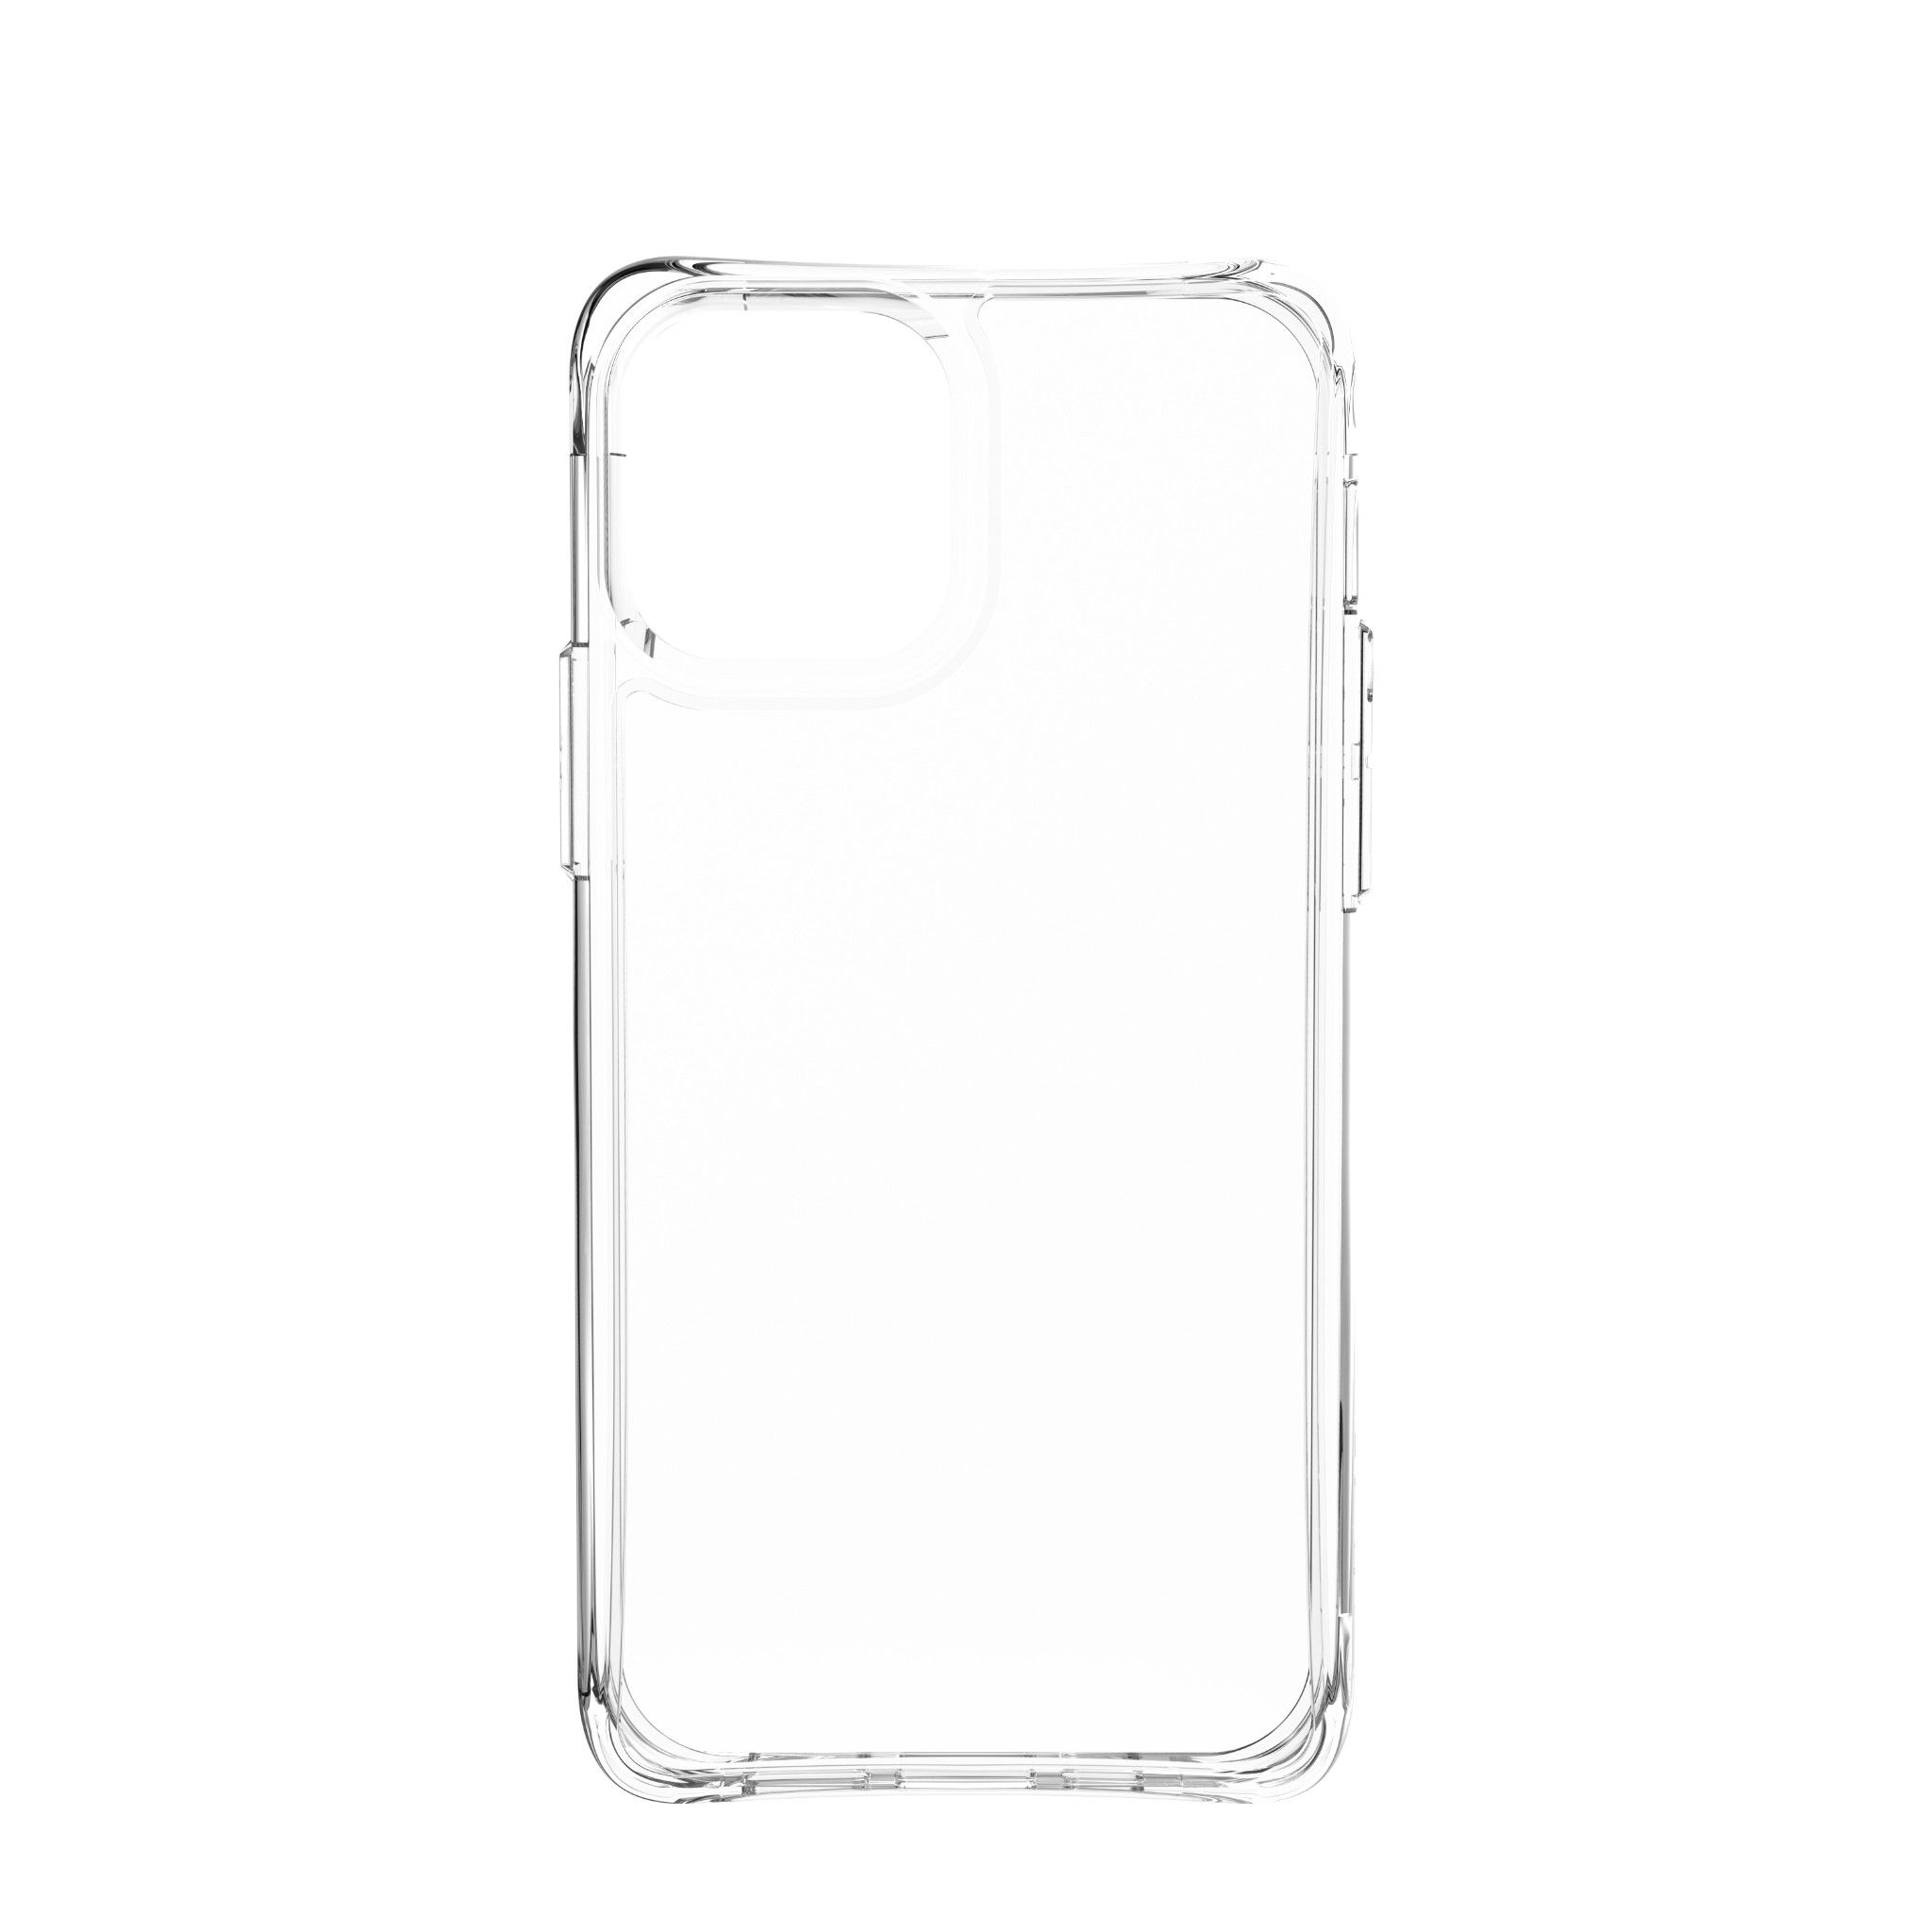  Ốp lưng Plyo cho iPhone 12 [6.1 inch] 